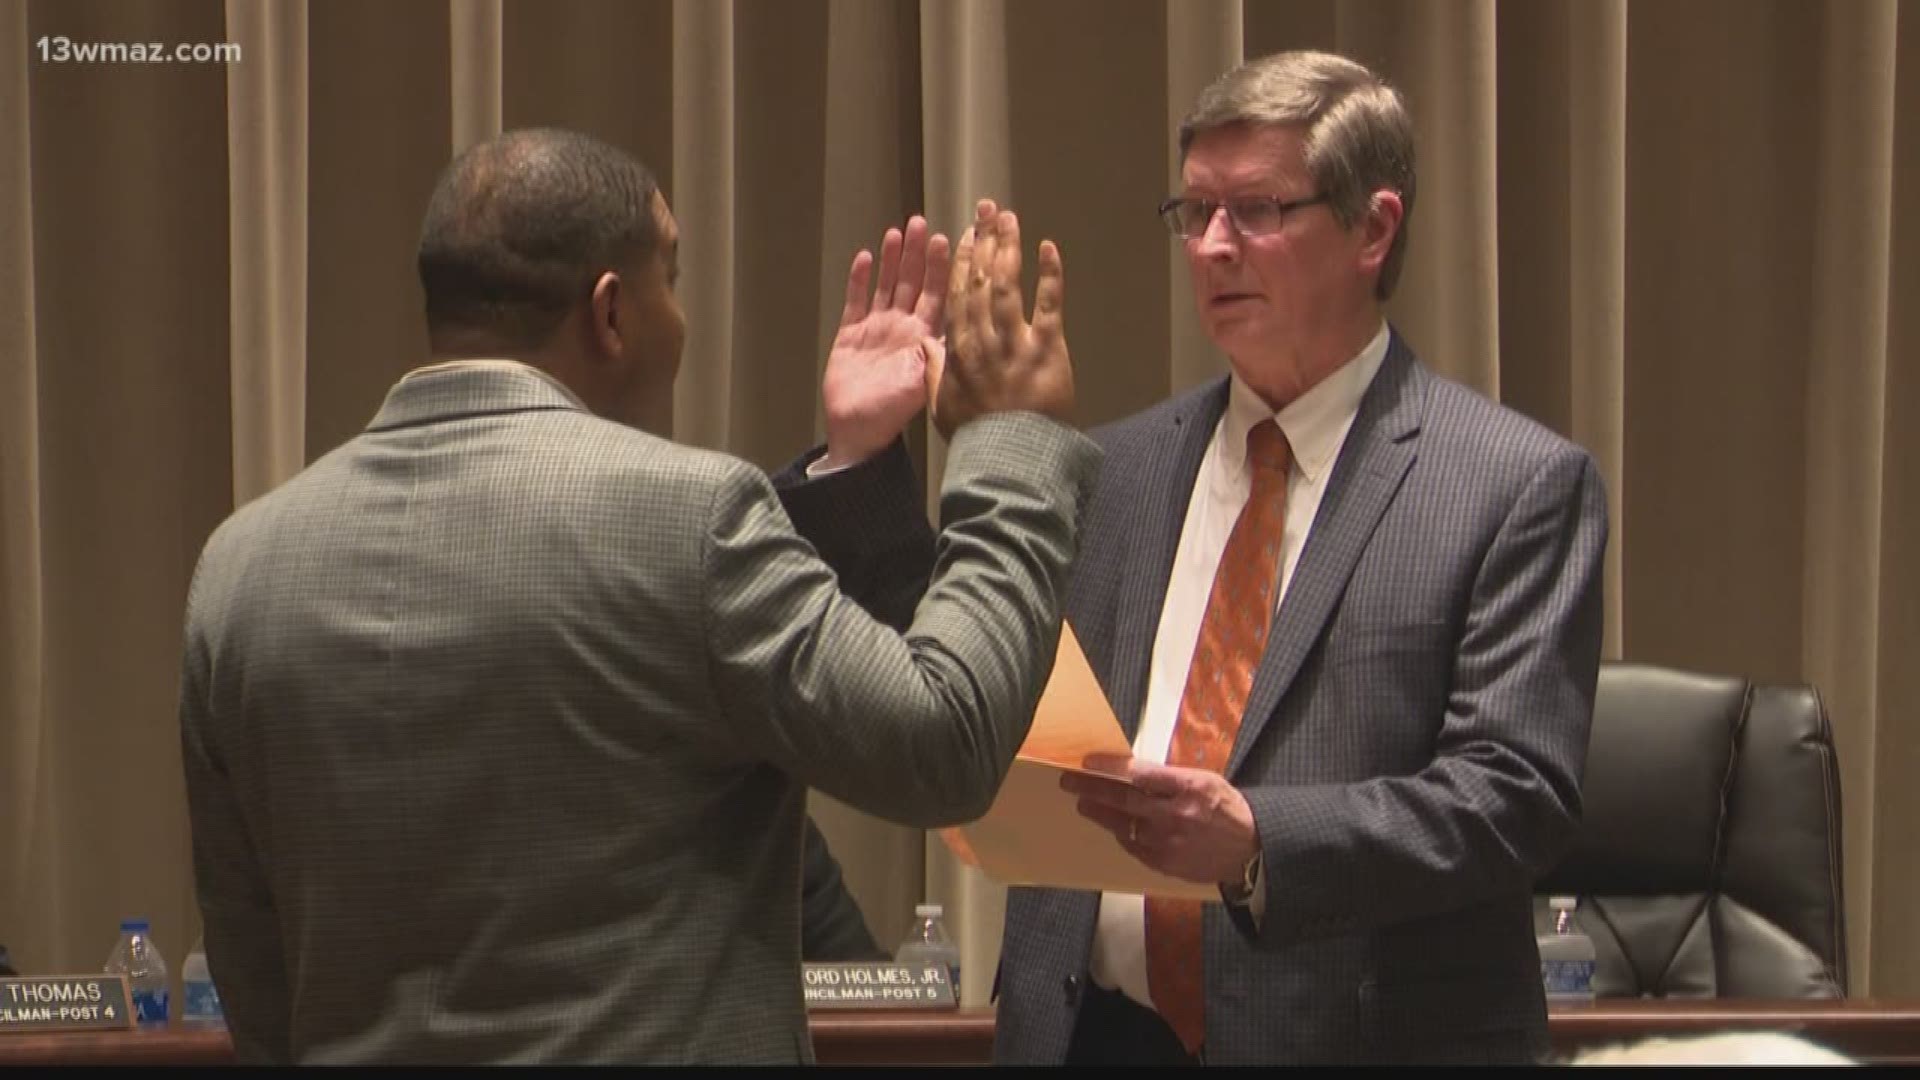 New Warner Robins councilman sworn in